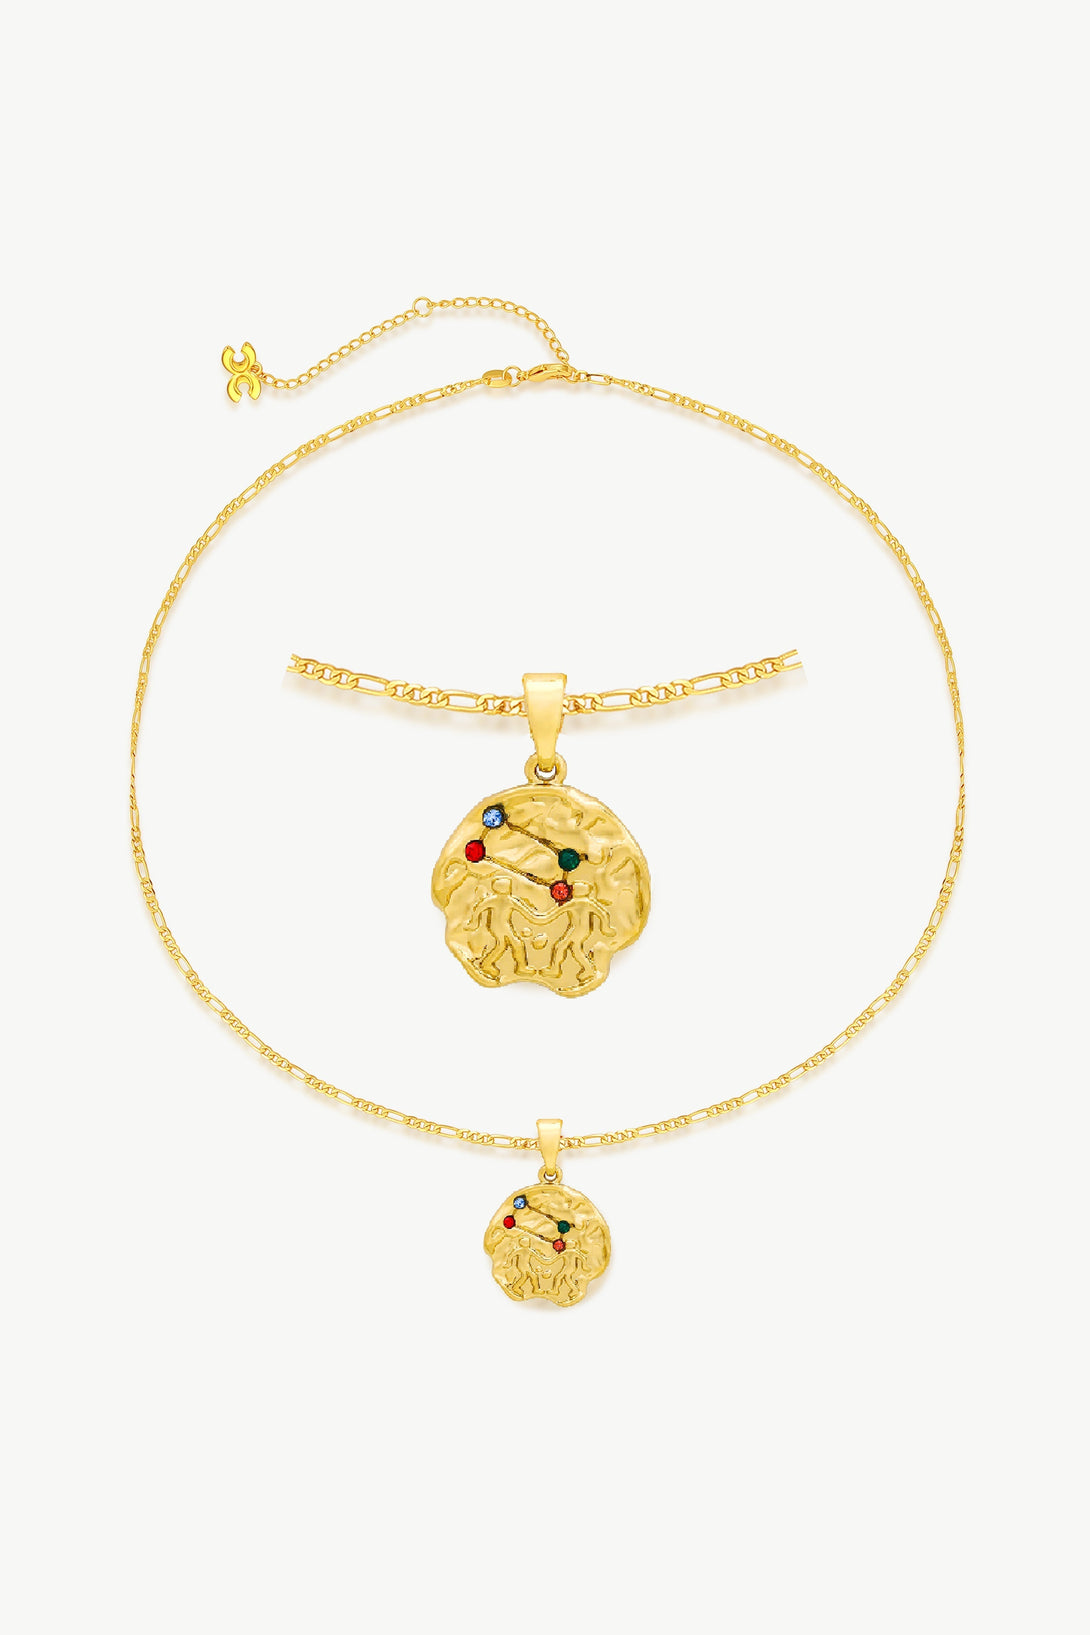 Gold Sculptural Zodiac Sign Pendant Necklace Set-Gemini - Classicharms